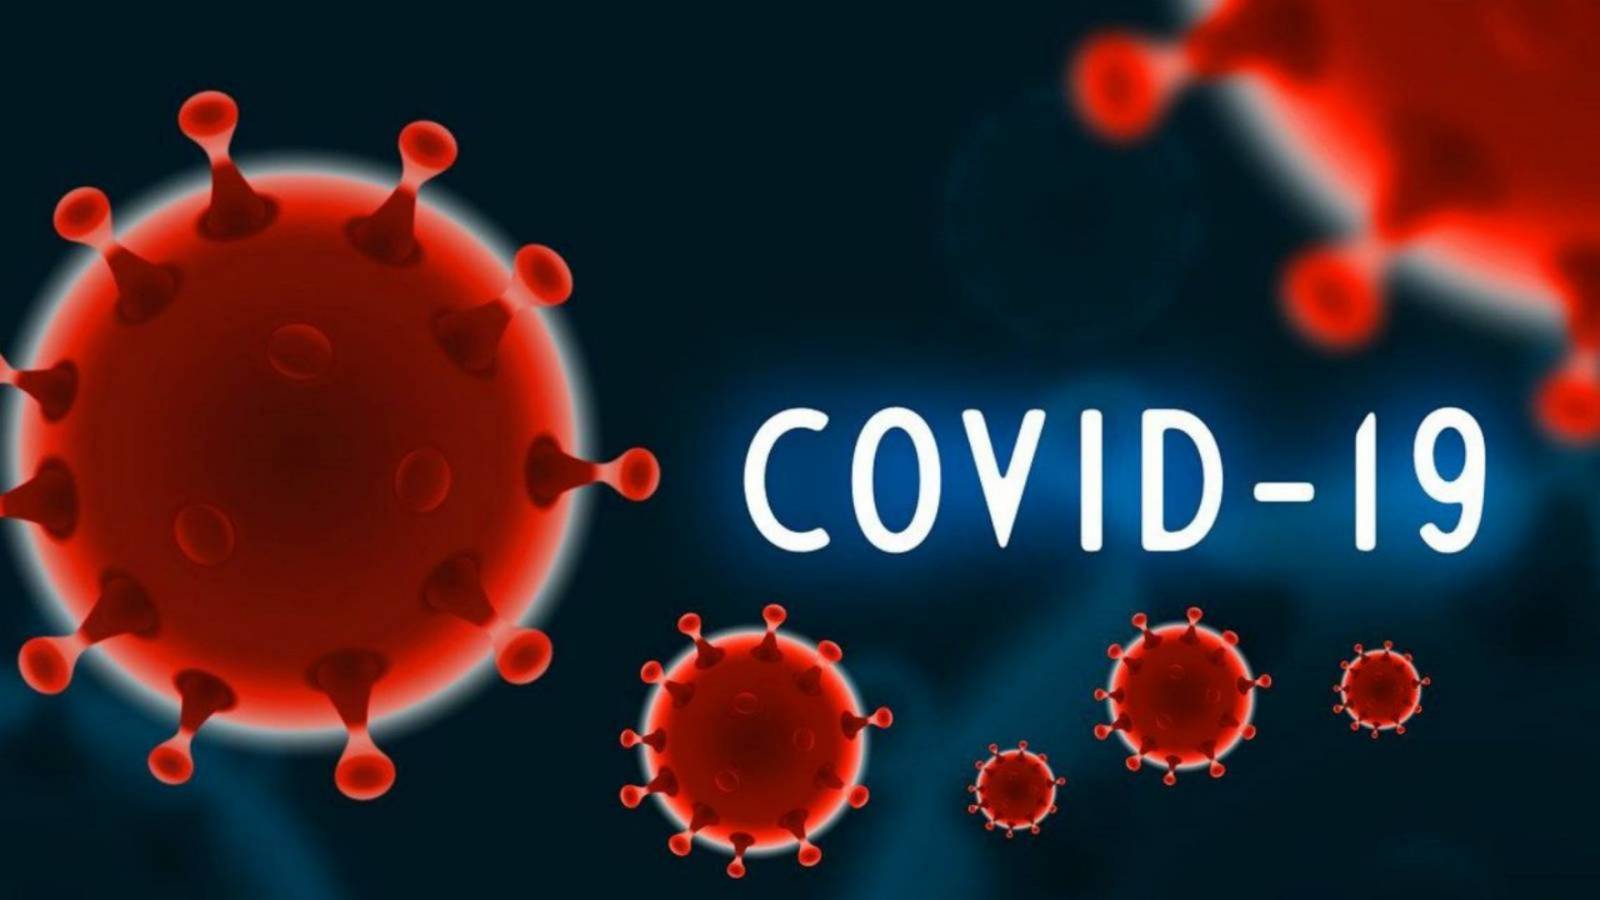 COVID-19 Rumunia NIEPOKOJĄCY Rekord w pełnej pandemii w Sibiu